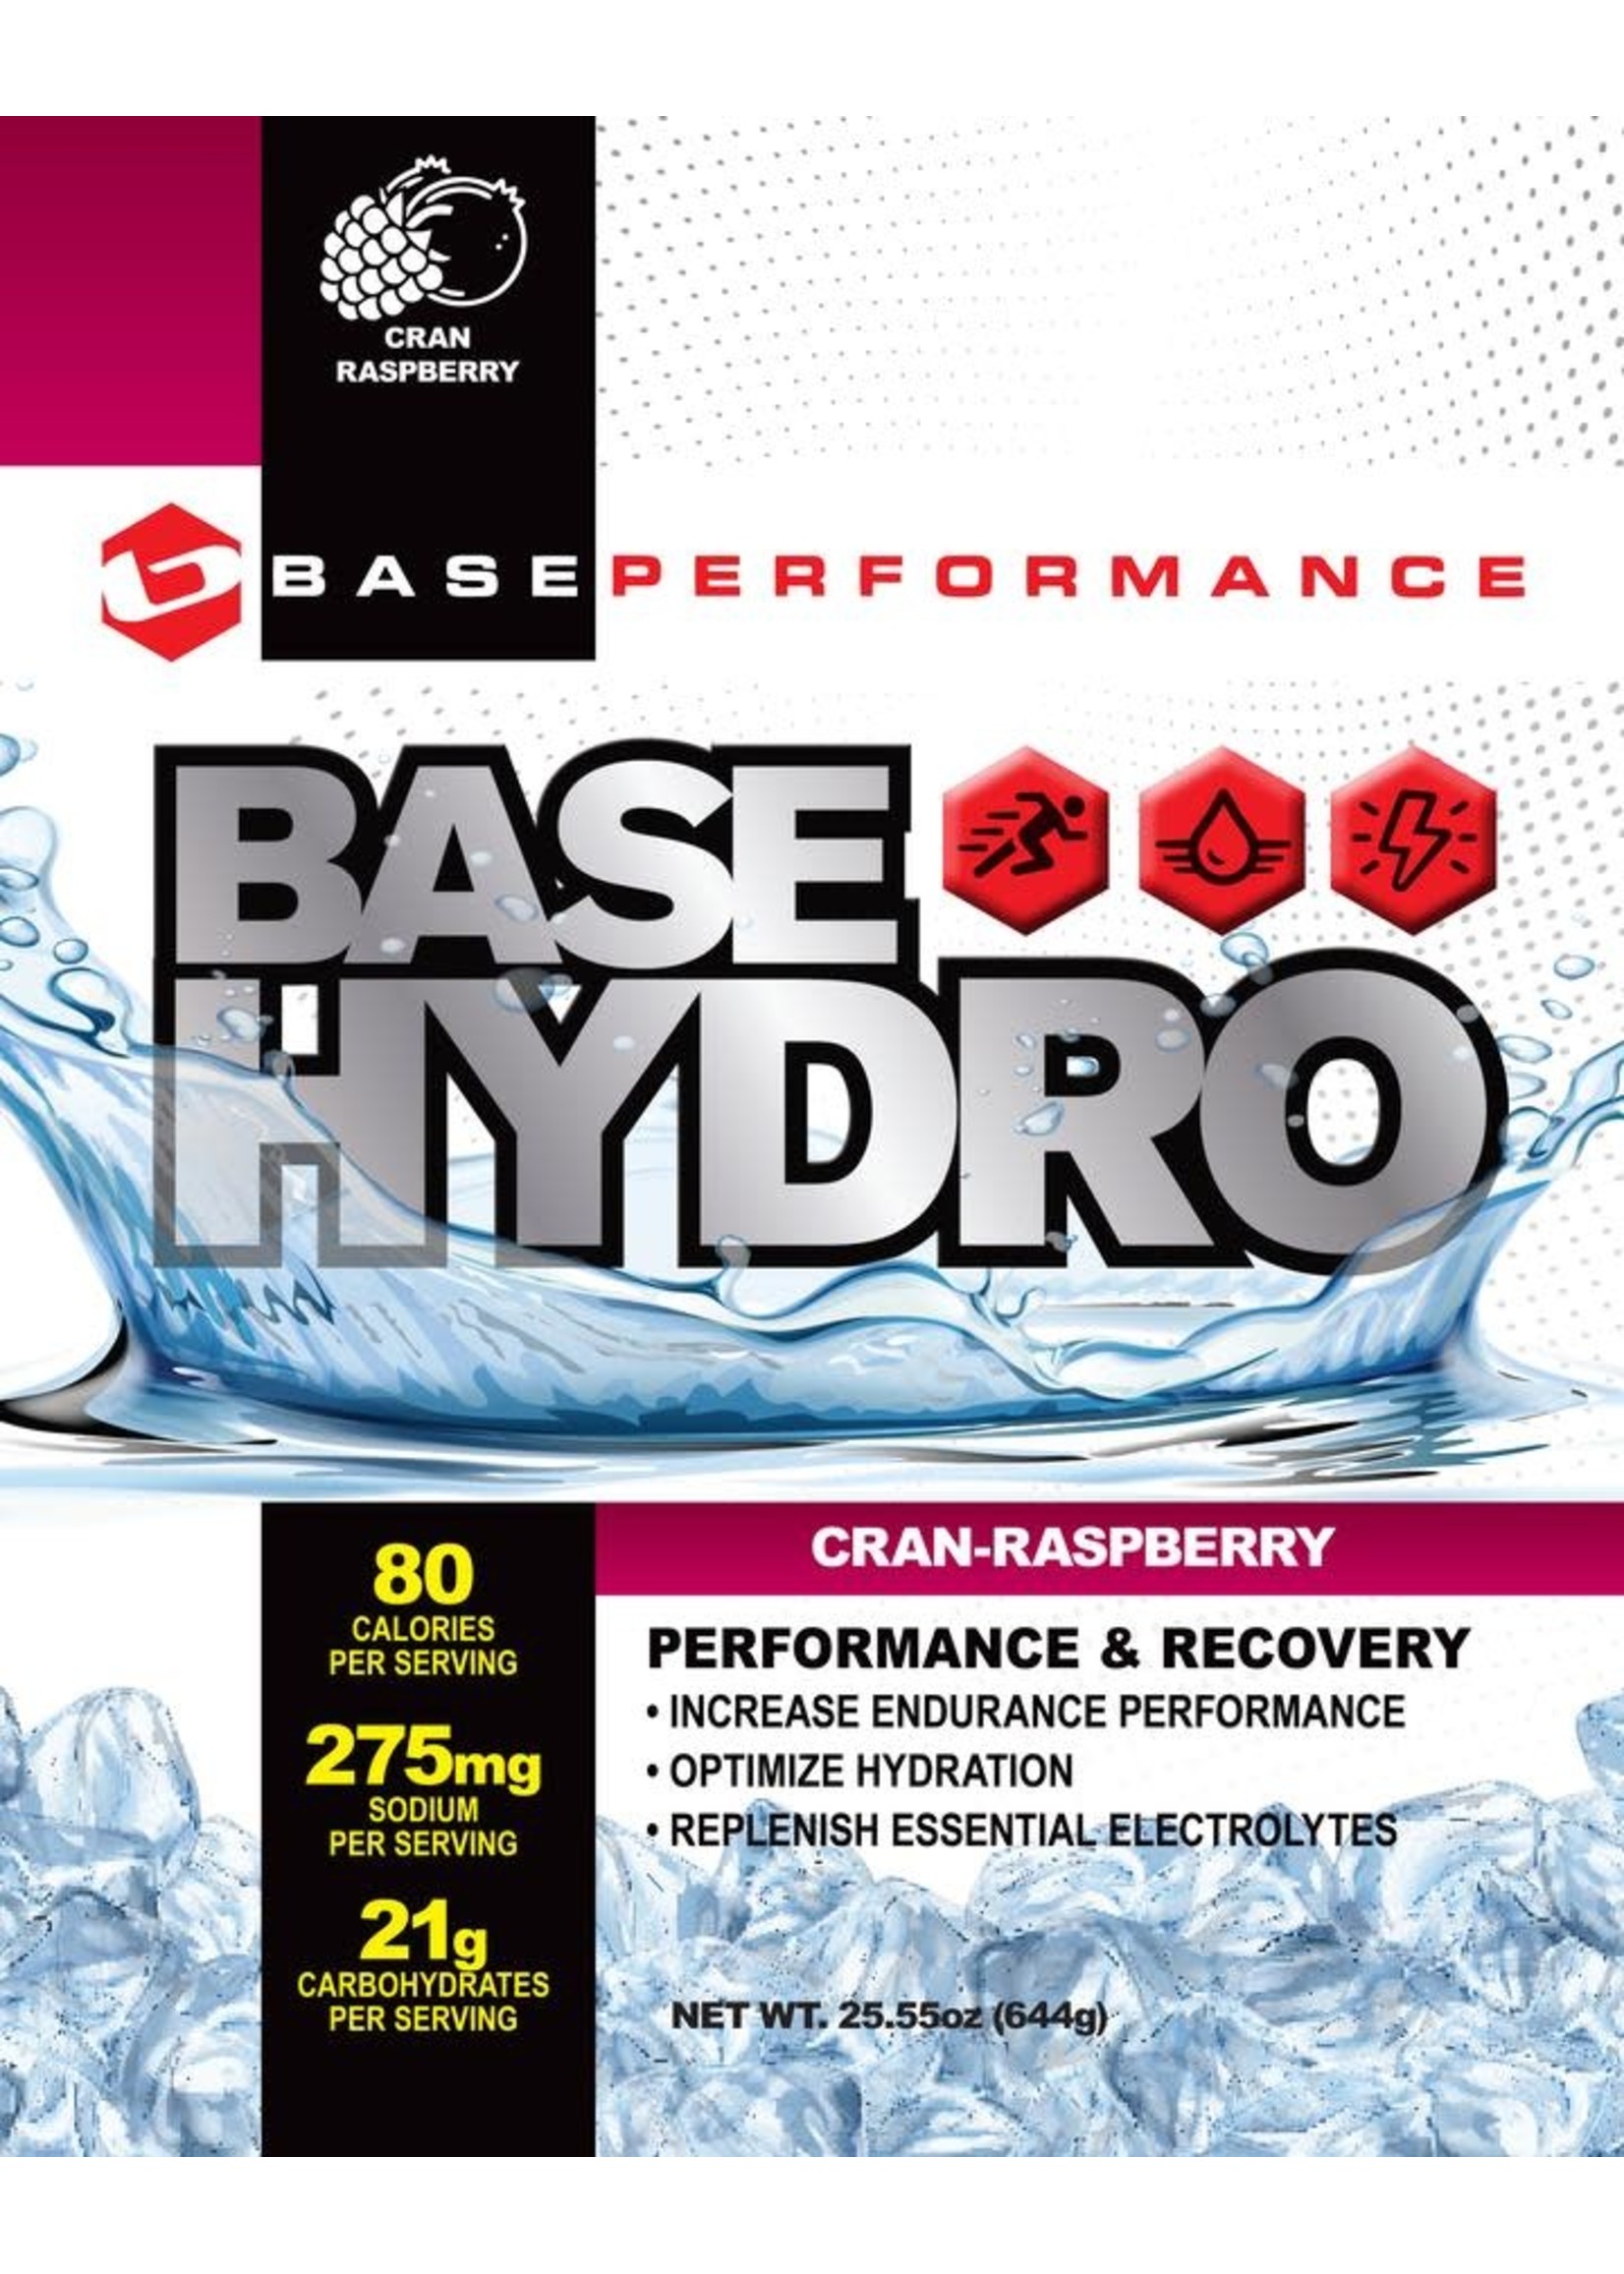 BASE BASE Hydro Cran-Raspberry